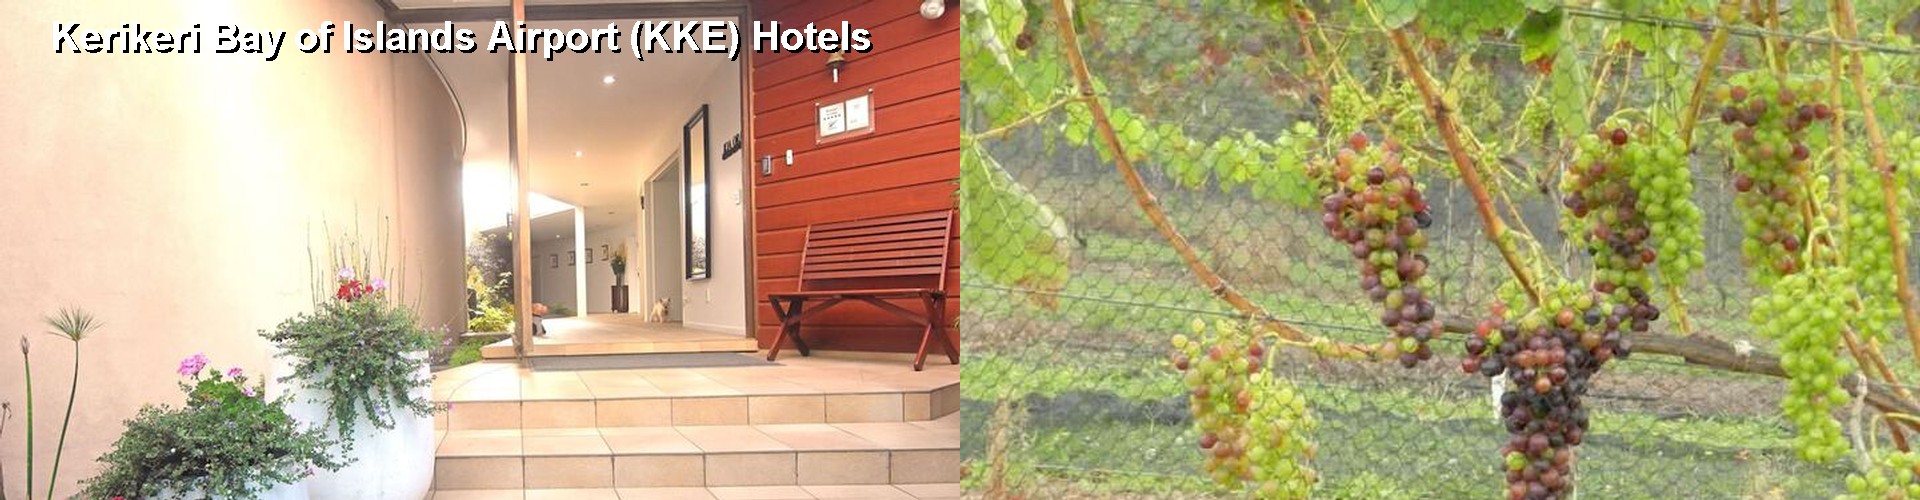 5 Best Hotels near Kerikeri Bay of Islands Airport (KKE)